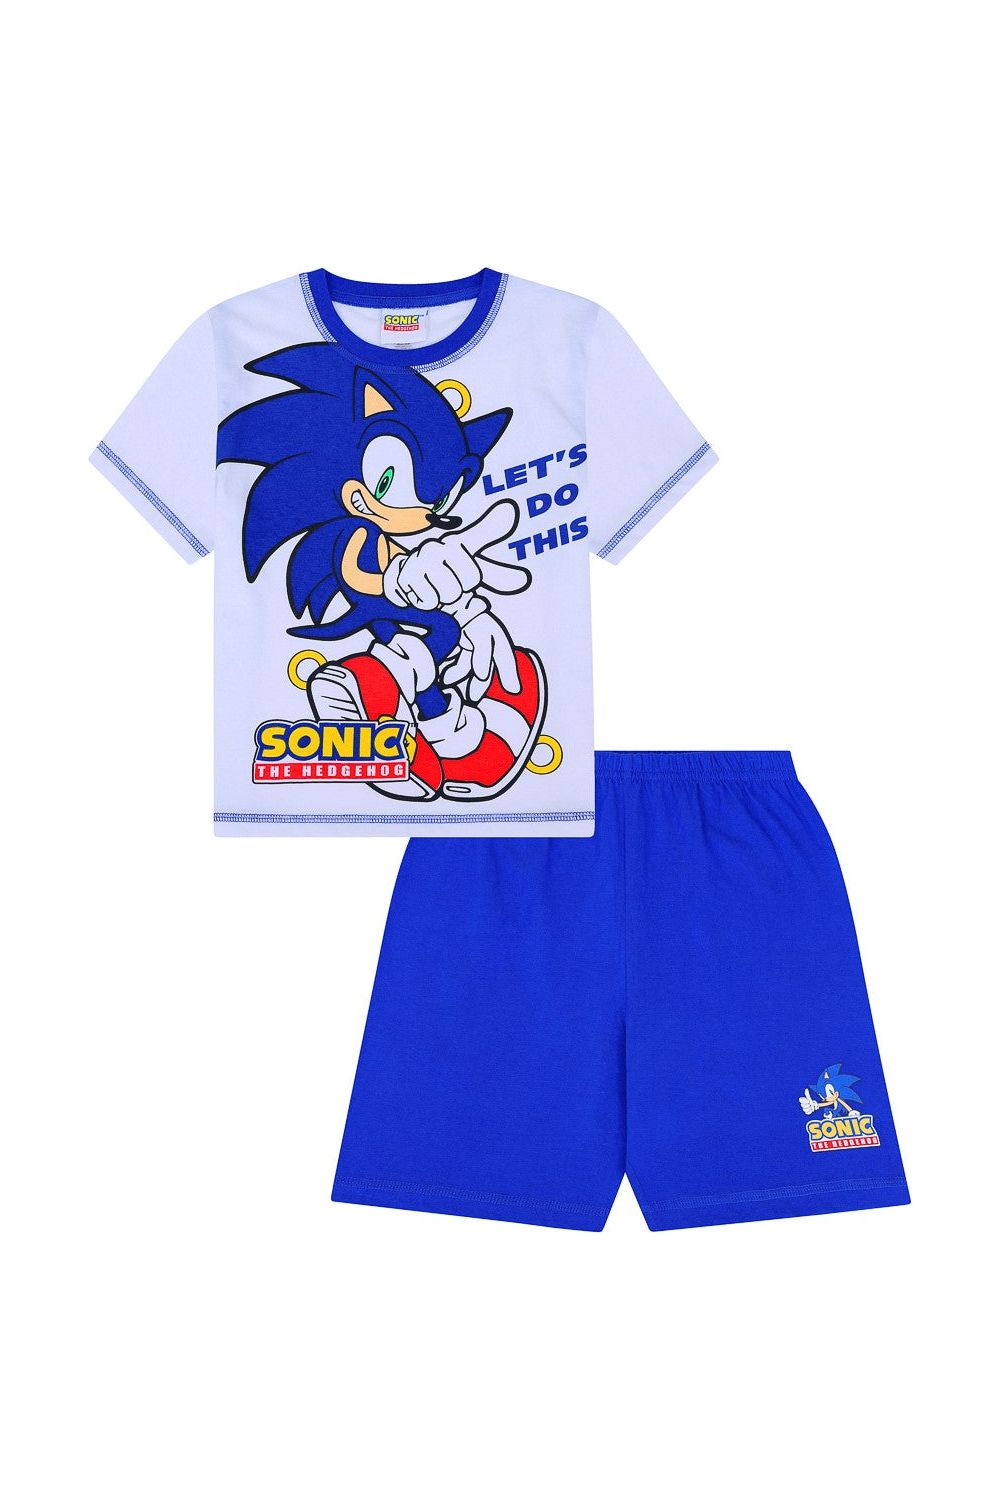 Sonic The Hedgehog Let's Do This Short Gamer Cotton Pyjamas - Pyjamas.com